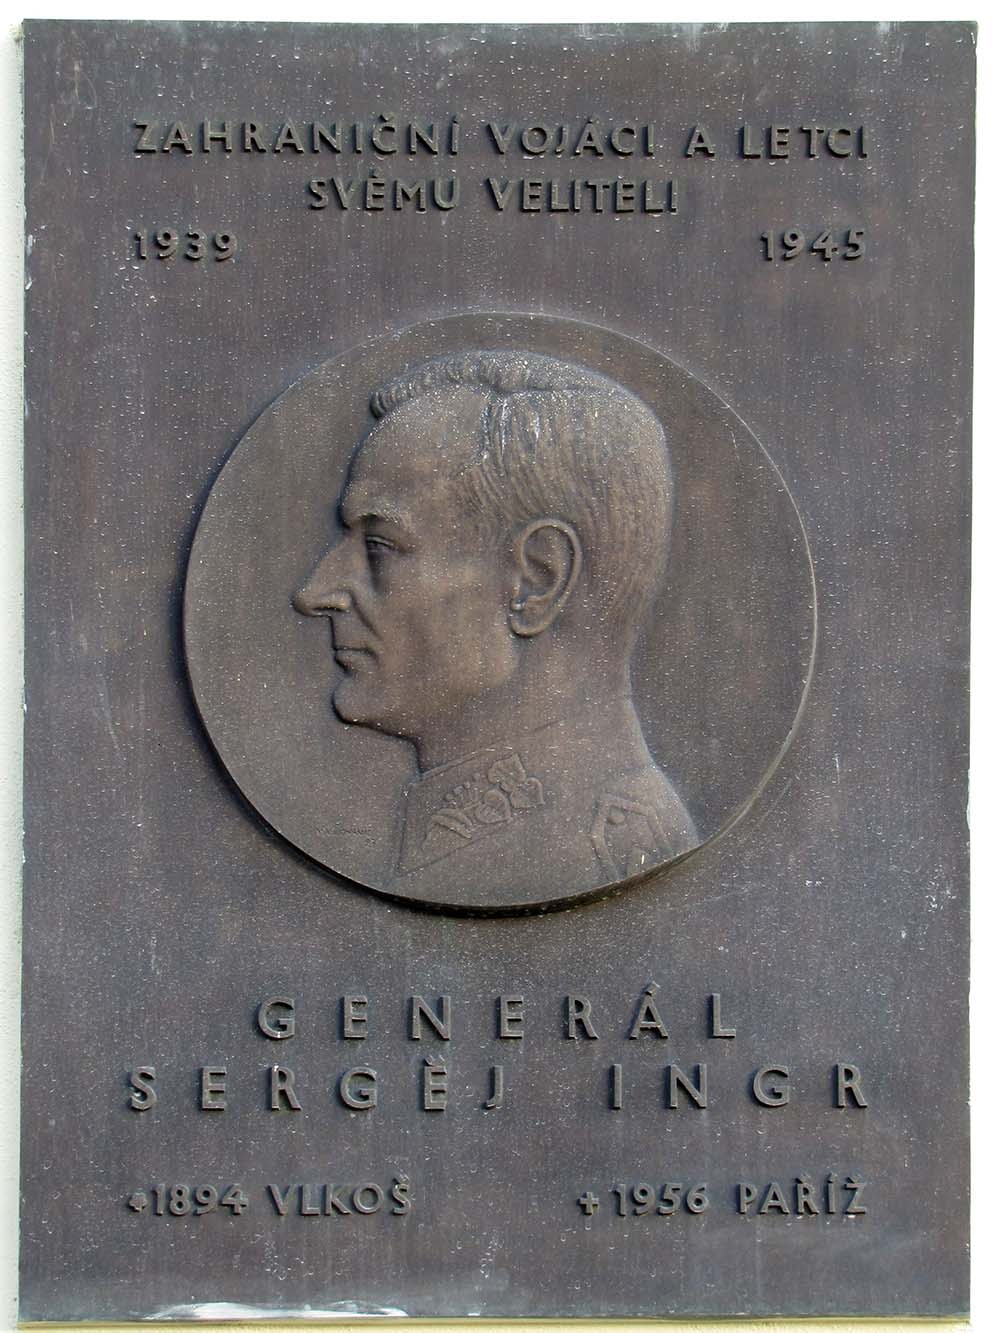 Gedenkteken Sergej Ingr #1